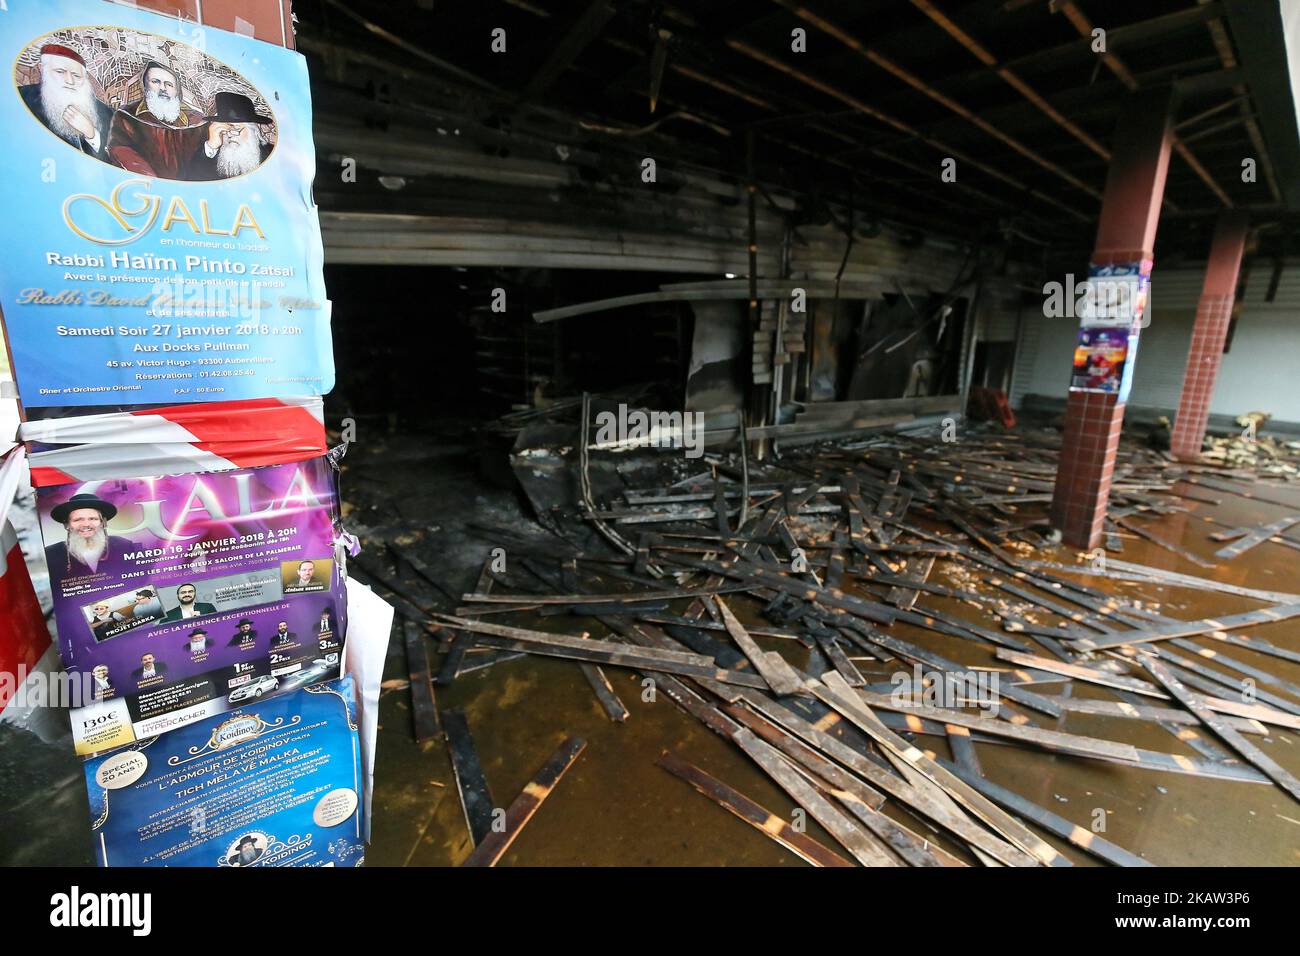 Eine Ansicht vom 9. Januar 2018 zeigt den Promo & Destock Store, ein französisches koscheres Lebensmittelgeschäft in Creteil, südlich von Paris, nachdem es bei einem Brandanschlag zerstört wurde, der die Ängste vor Antisemitismus wieder aufleben ließ. Die Staatsanwälte sagten, dass das Geschäft im südlichen Pariser Vorort Creteil über Nacht, Tage nachdem es von antisemitischen Graffiti getroffen wurde, in Brand geraten war. Der Promo & Destock Store war einer von zwei benachbarten koscheren Shops in Creteil, die im vergangenen Januar 3 mit Hakenkreuzen übertünchen wurden. Das Feuer kommt am dritten Jahrestag des Angriffs am 9. Januar 2015 auf einen koscheren Supermarkt im Norden von Paris durch ein Ji Stockfoto